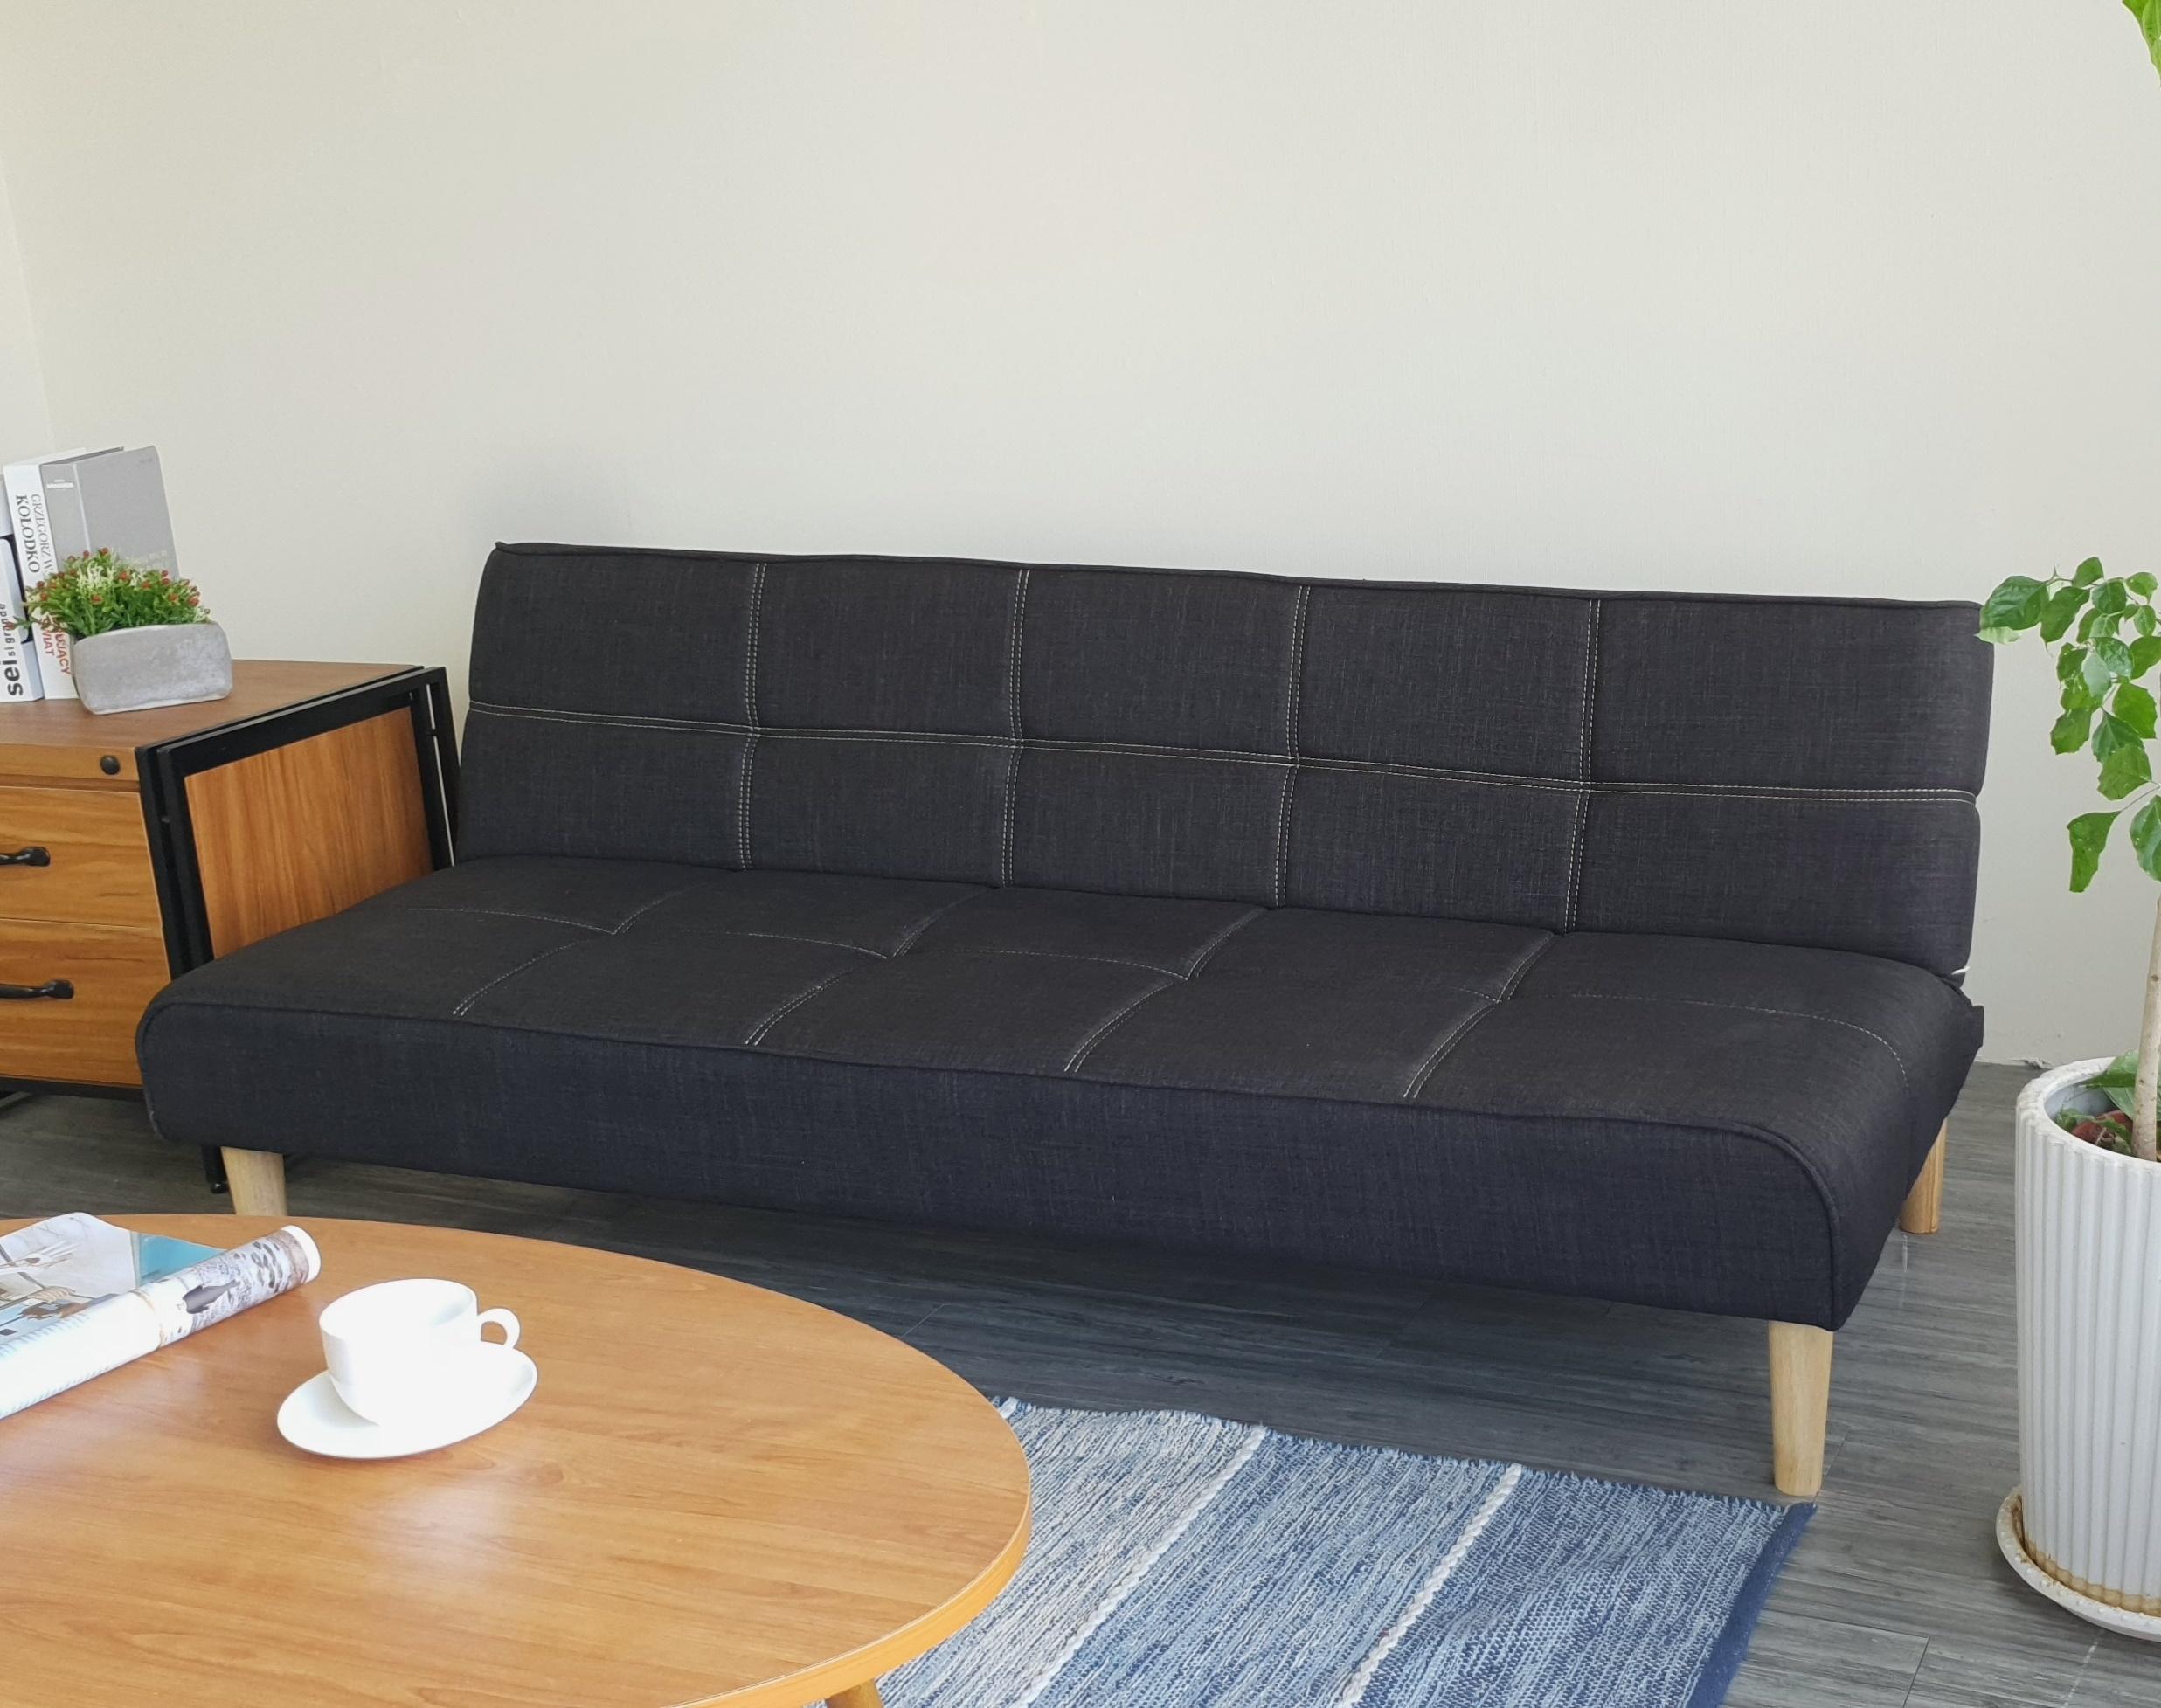 Sofa bed 3 trong 1 Juno sofa chân gỗ màu xám đen